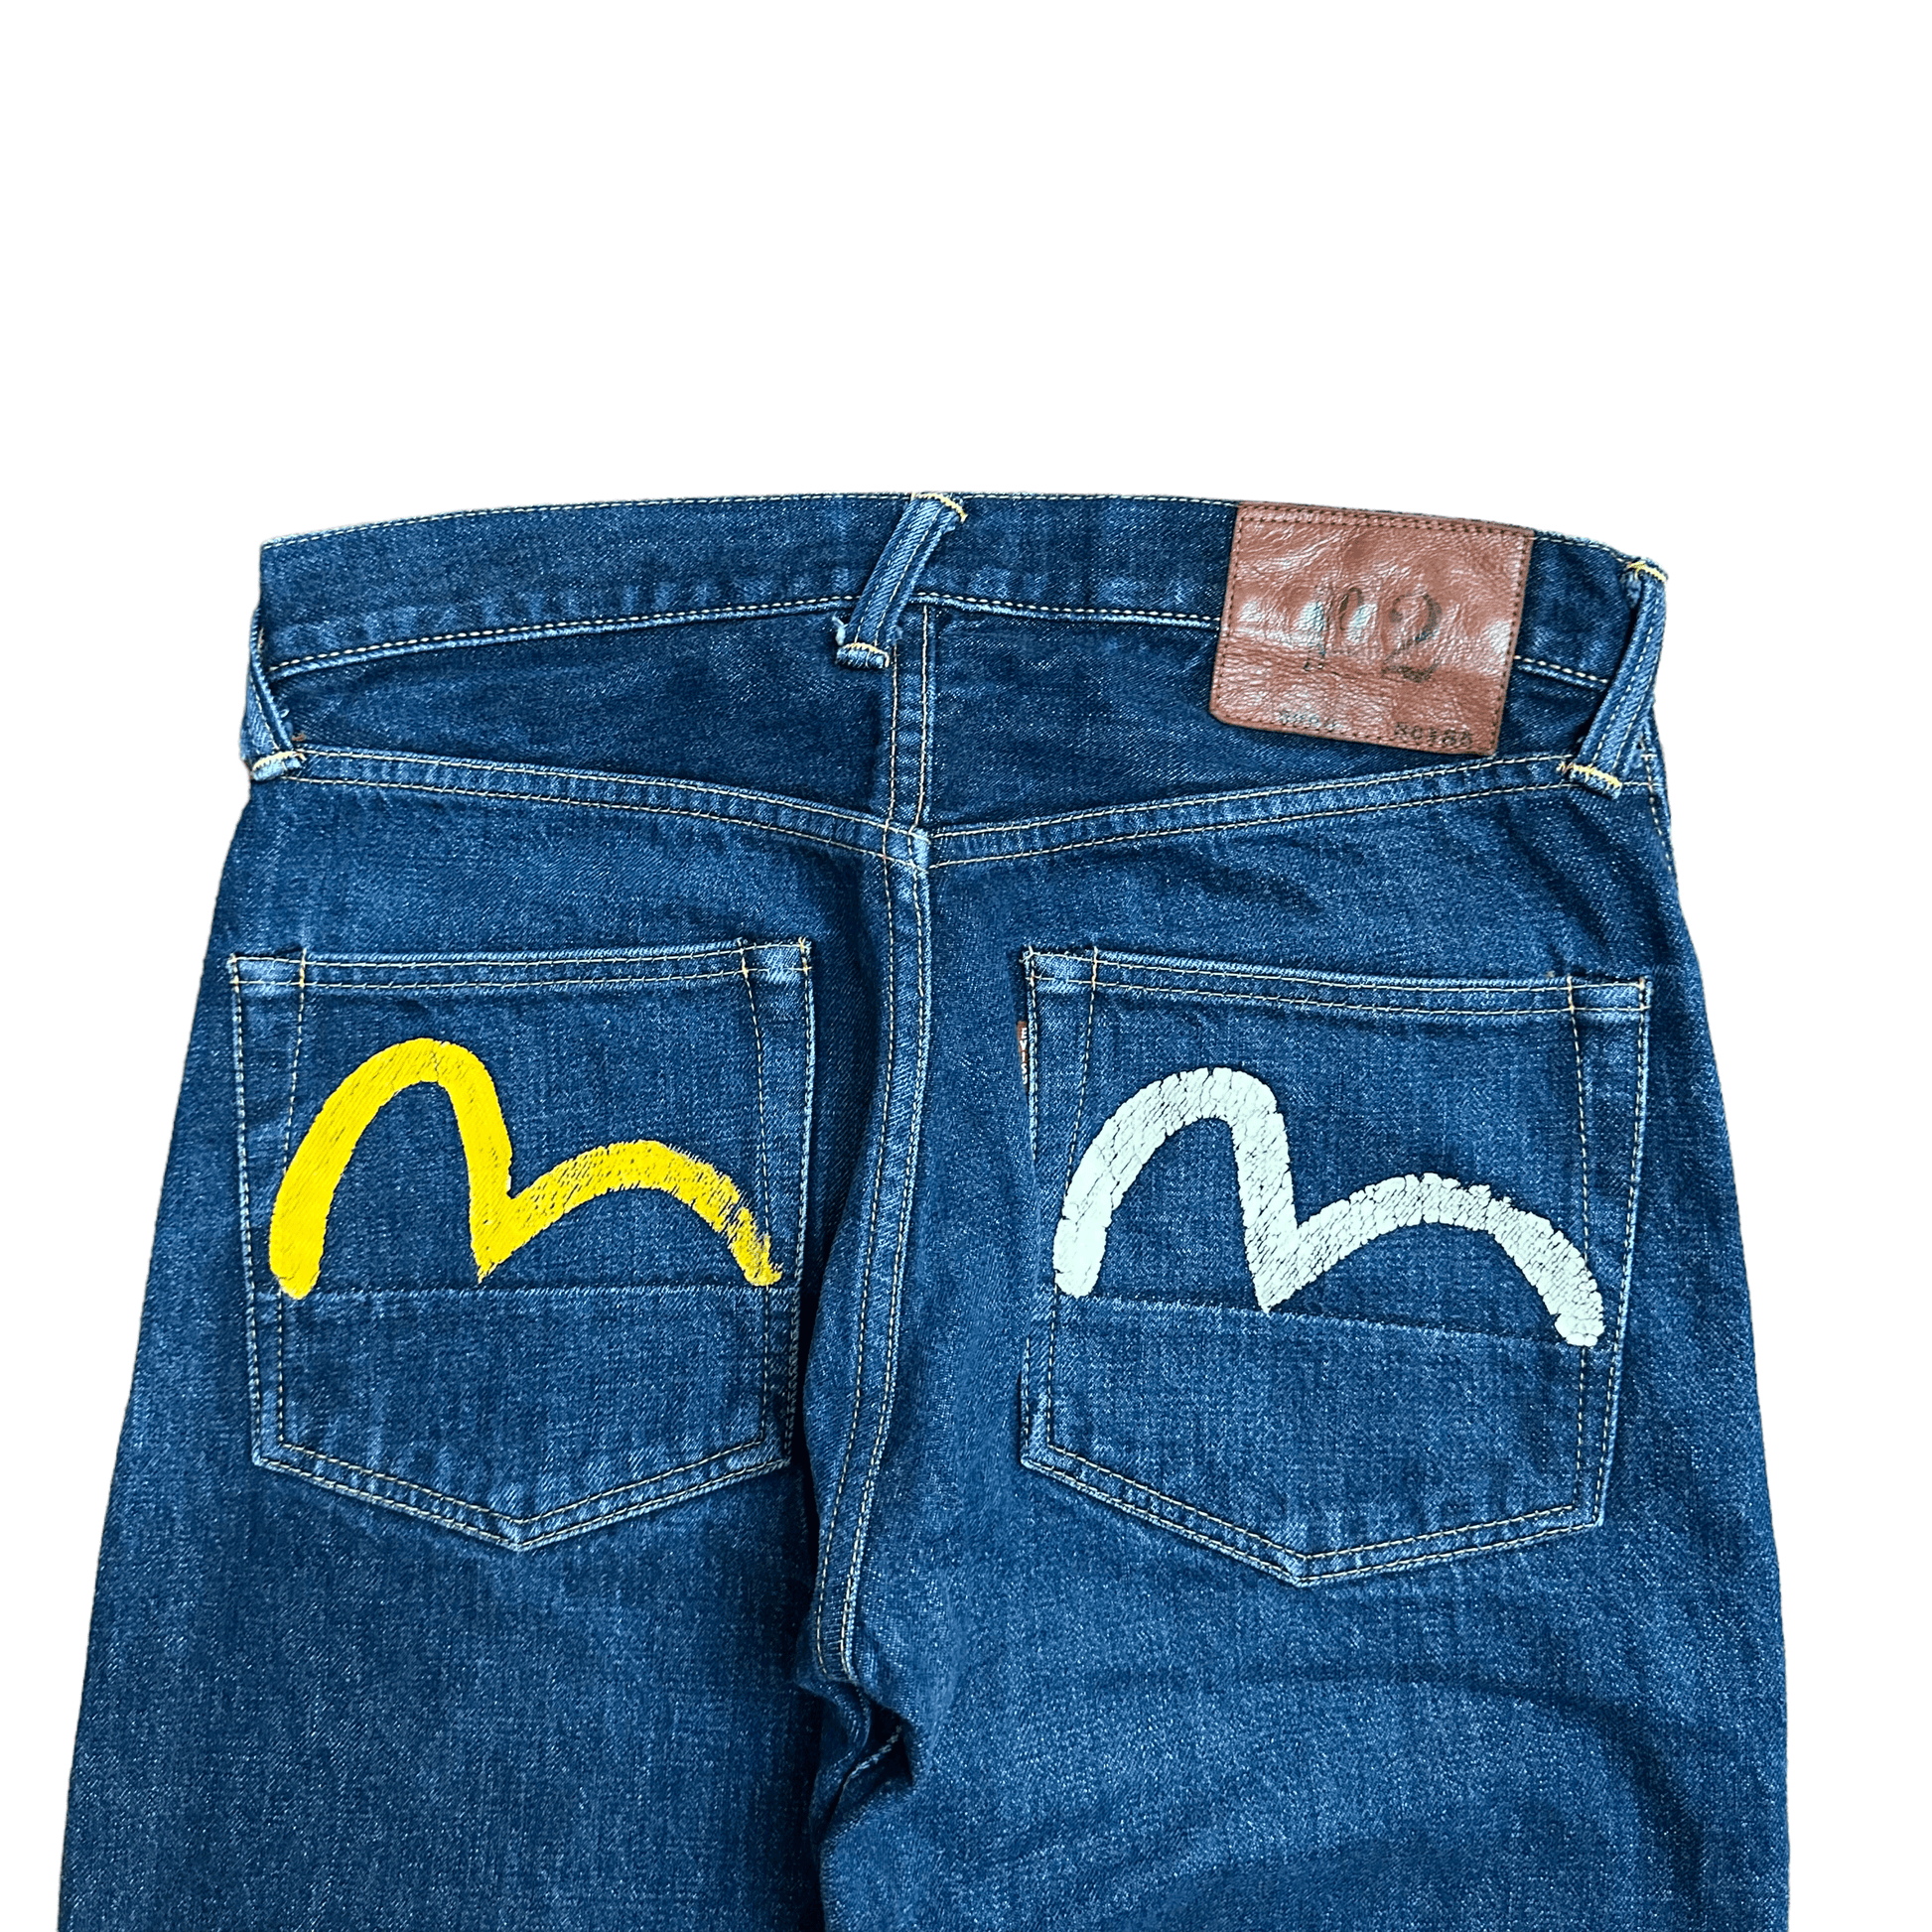 EVISU Bottom 2001/ no.2/ Gull/ Denim jeans - Known Source